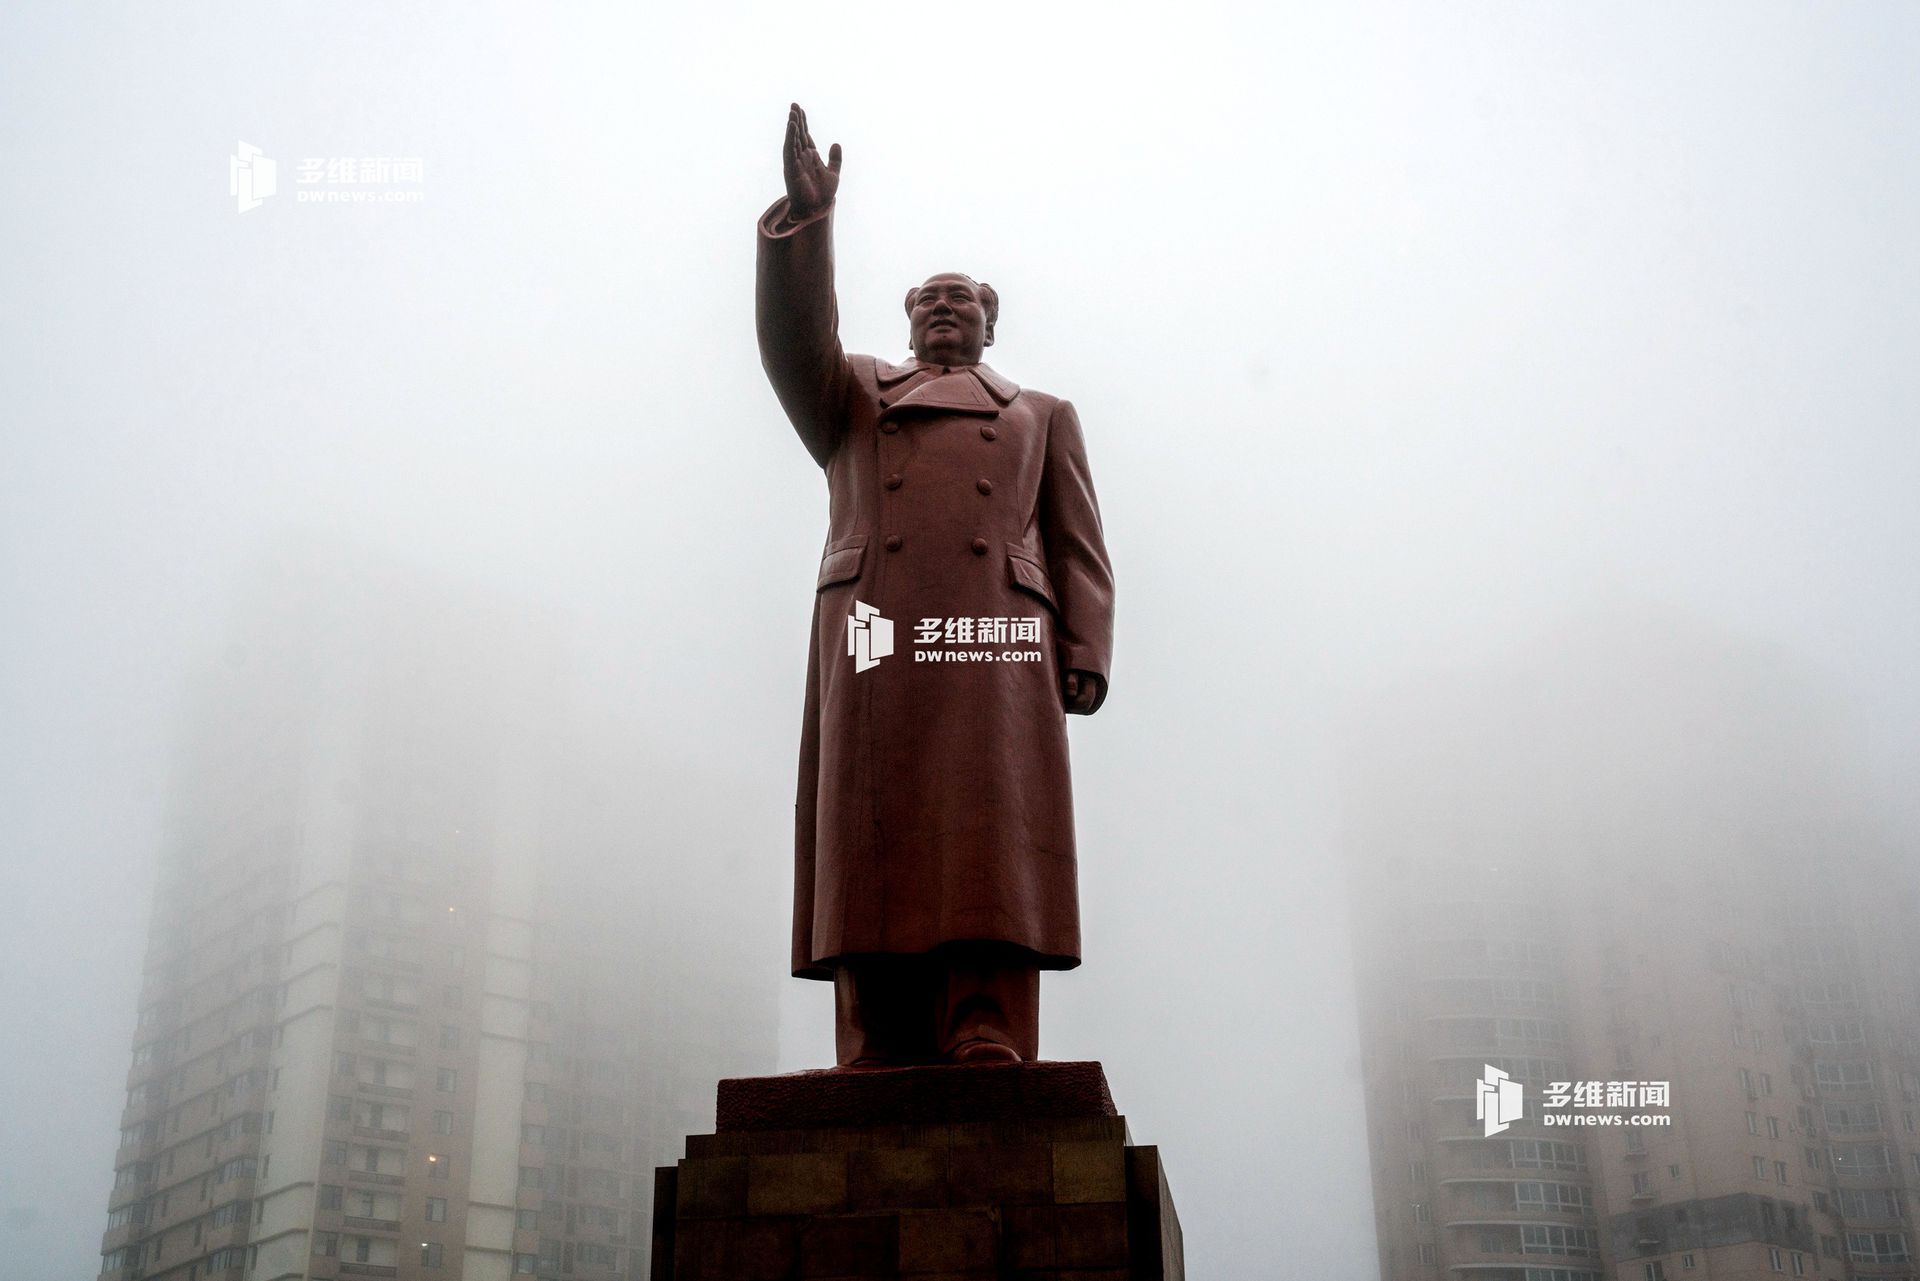 中国已故领导人毛泽东塑像矗立于丹东市火车站站前广场中央，整个塑像扬手向西，那是北京的方位。（多维新闻）